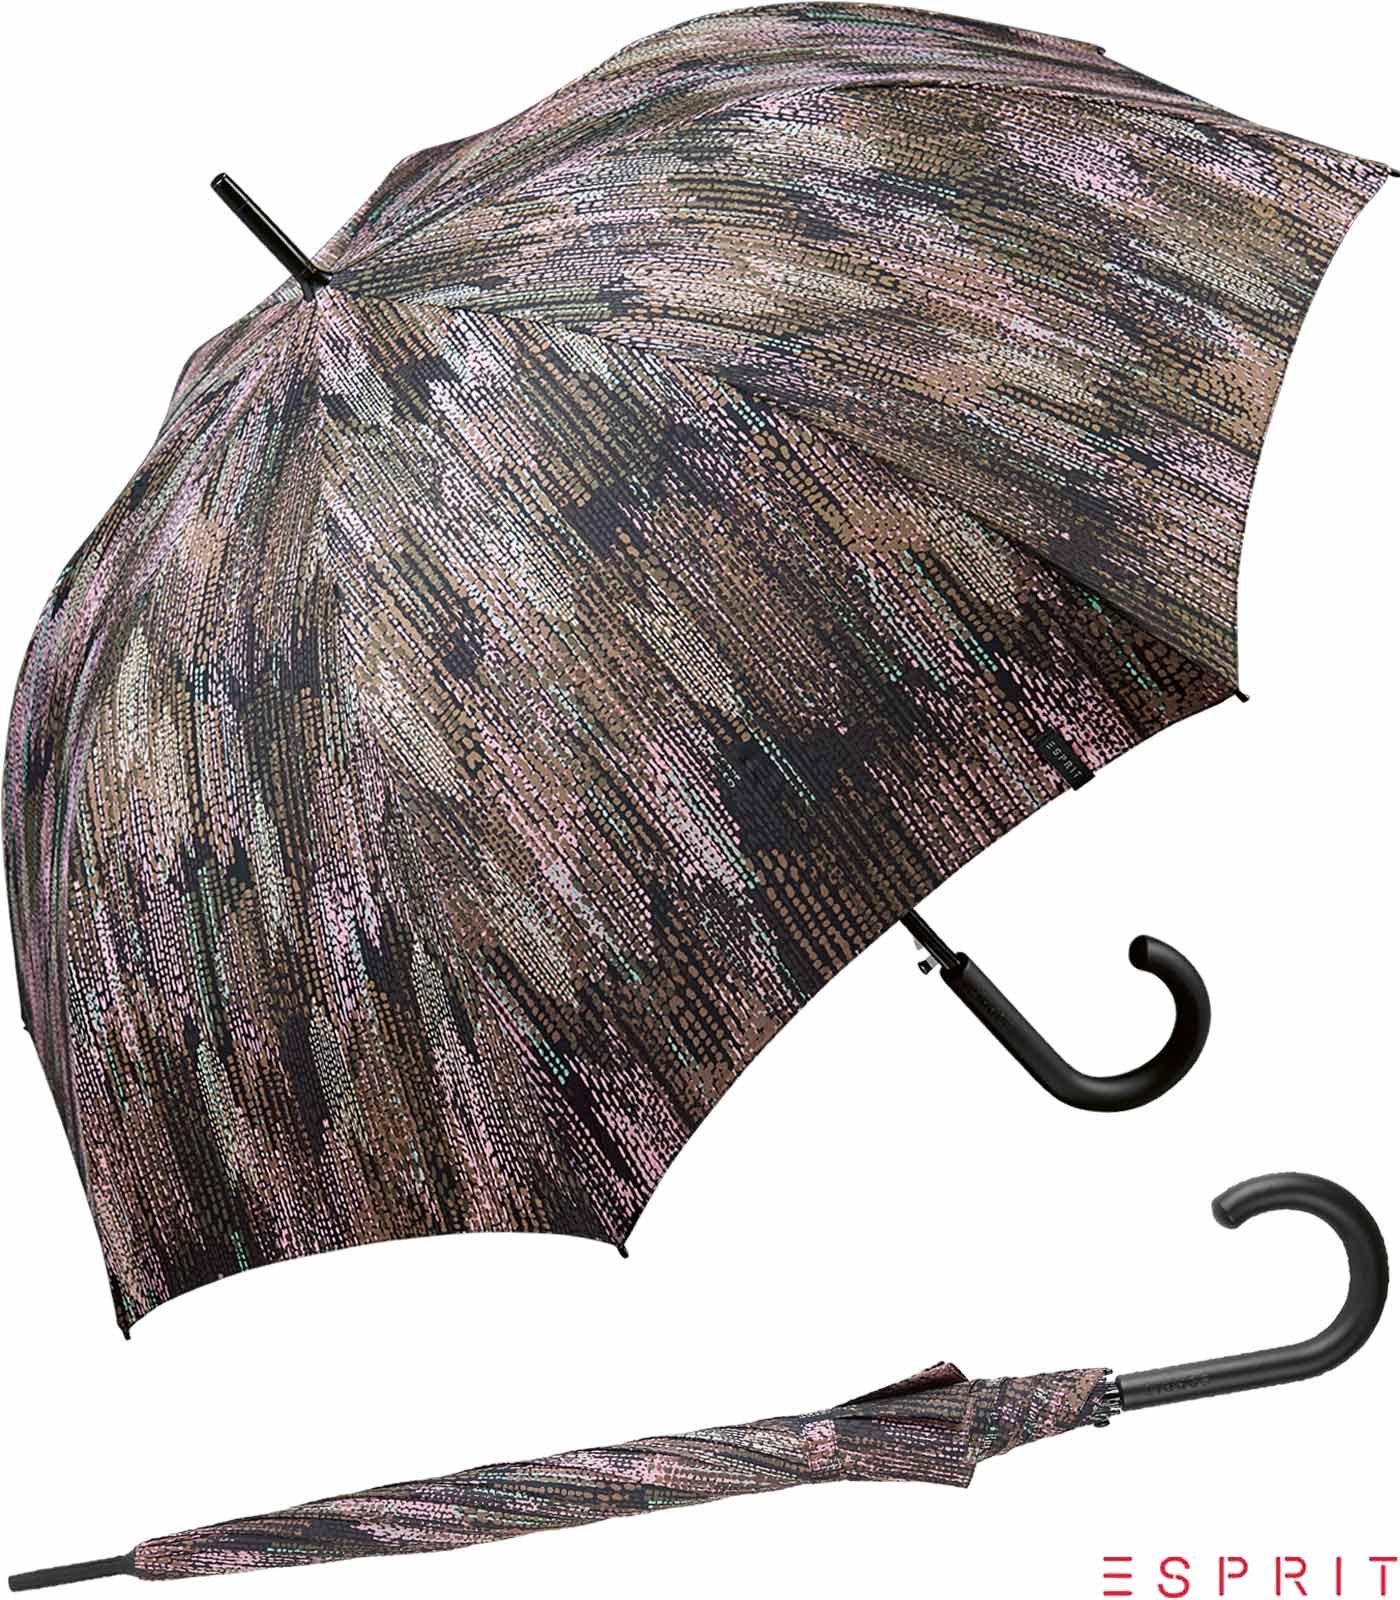 gray, - Edges Blurred Damen braun verwaschener Esprit mit in Auf-Automatik taupe groß, - stabil, gedeckter Langregenschirm Optik